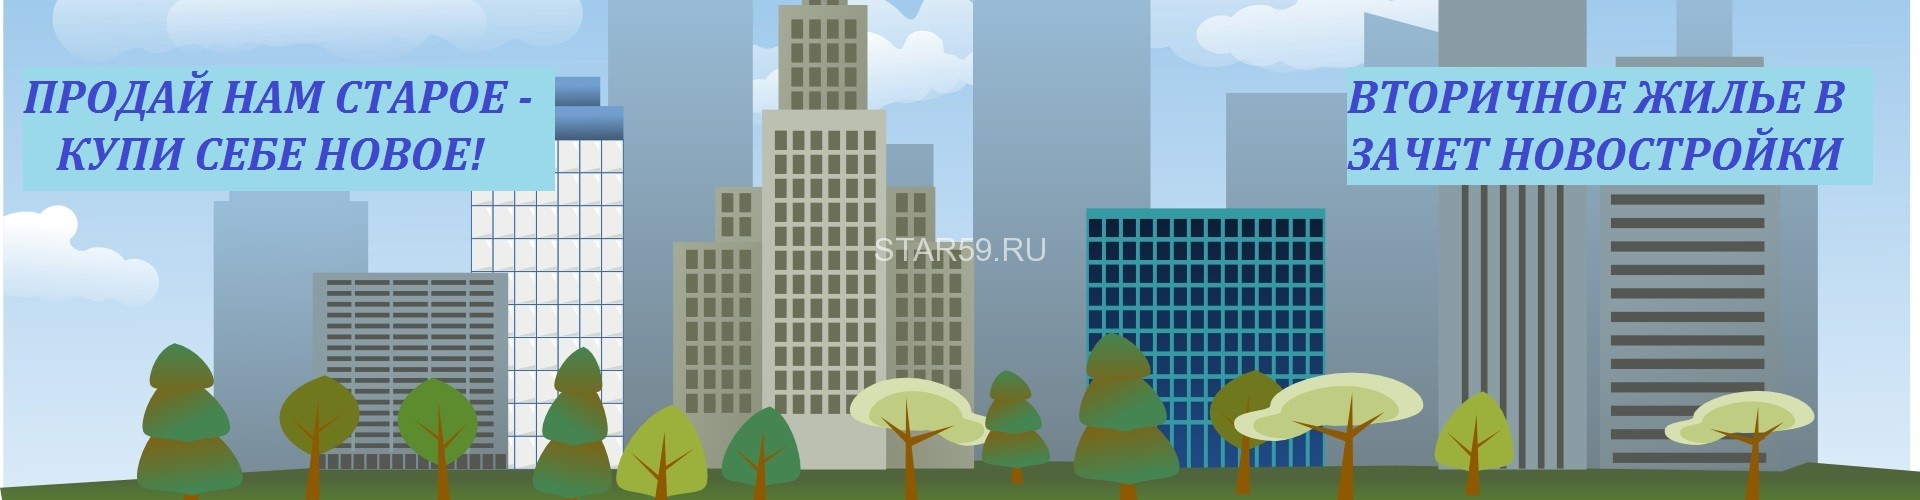 ЗВЕЗДА — агентство недвижимости в Перми | Новостройки в Перми, продажа квартир, домов, земельных участков и другой недвижимости.